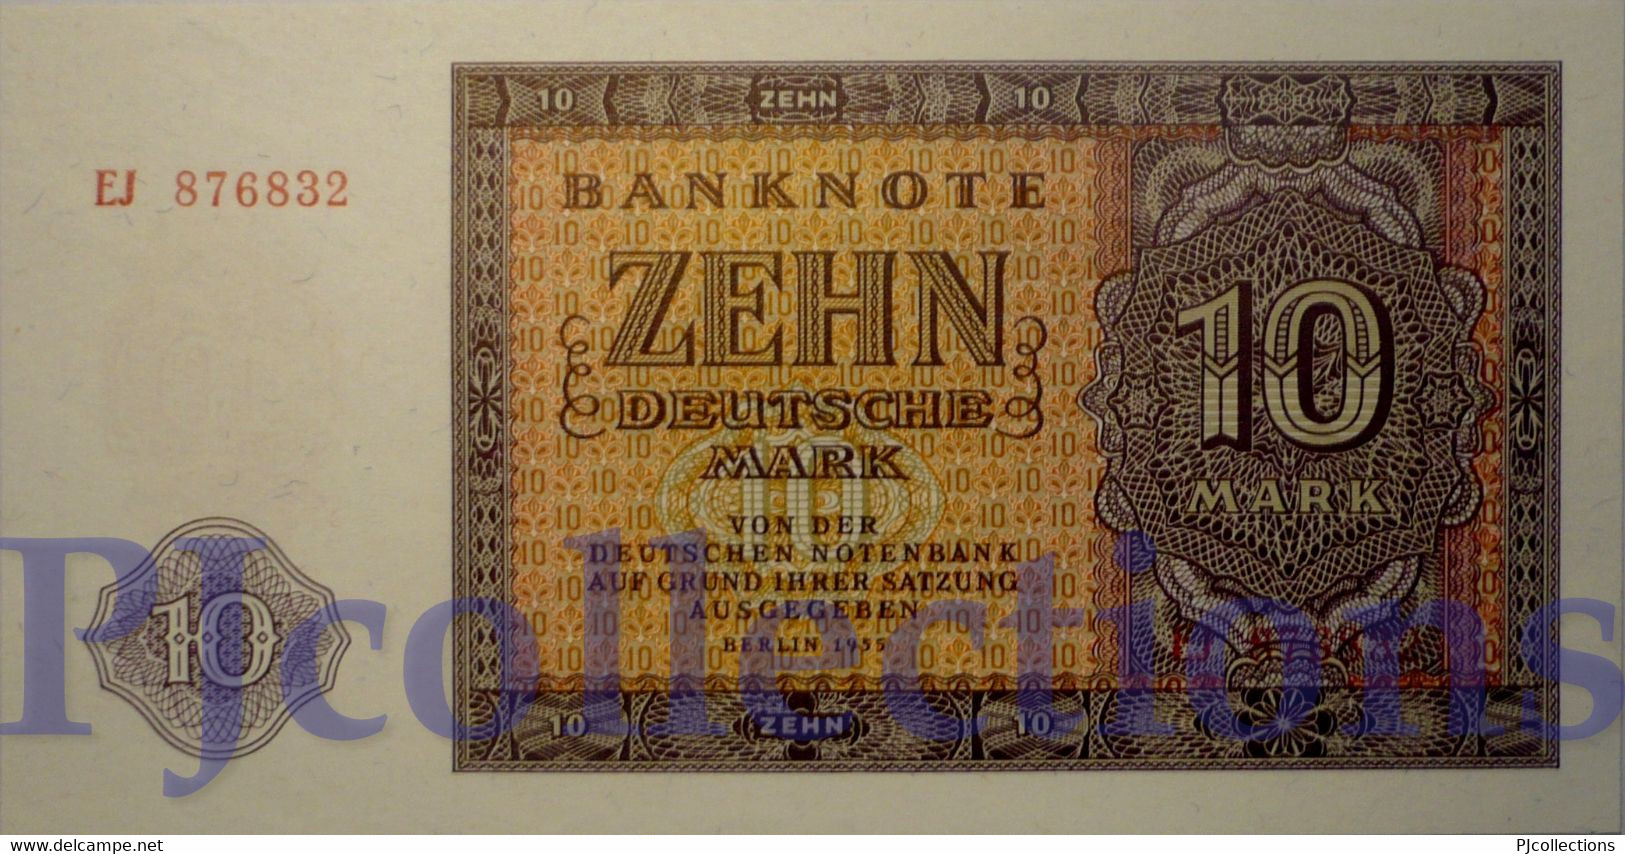 GERMANY 10 DEUTSCHEMARK 1944 PICK 18a UNC - 10 Reichsmark